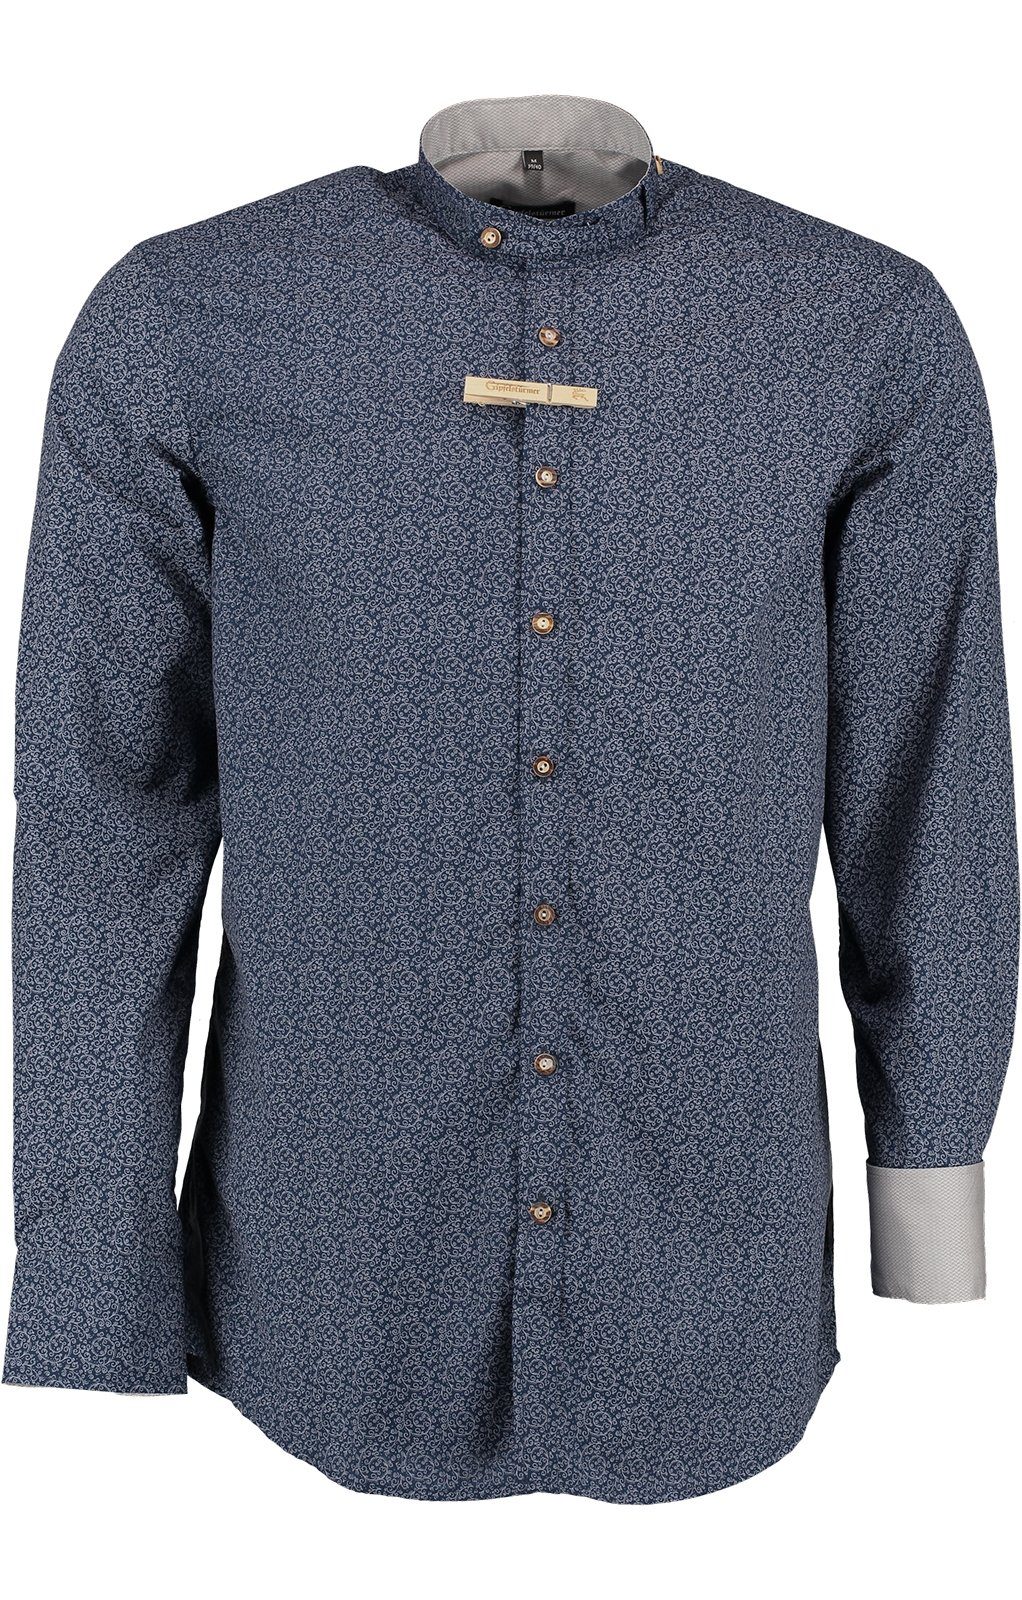 ERIK OS-Trachten Stehkragenhemd Trachtenhemd blau